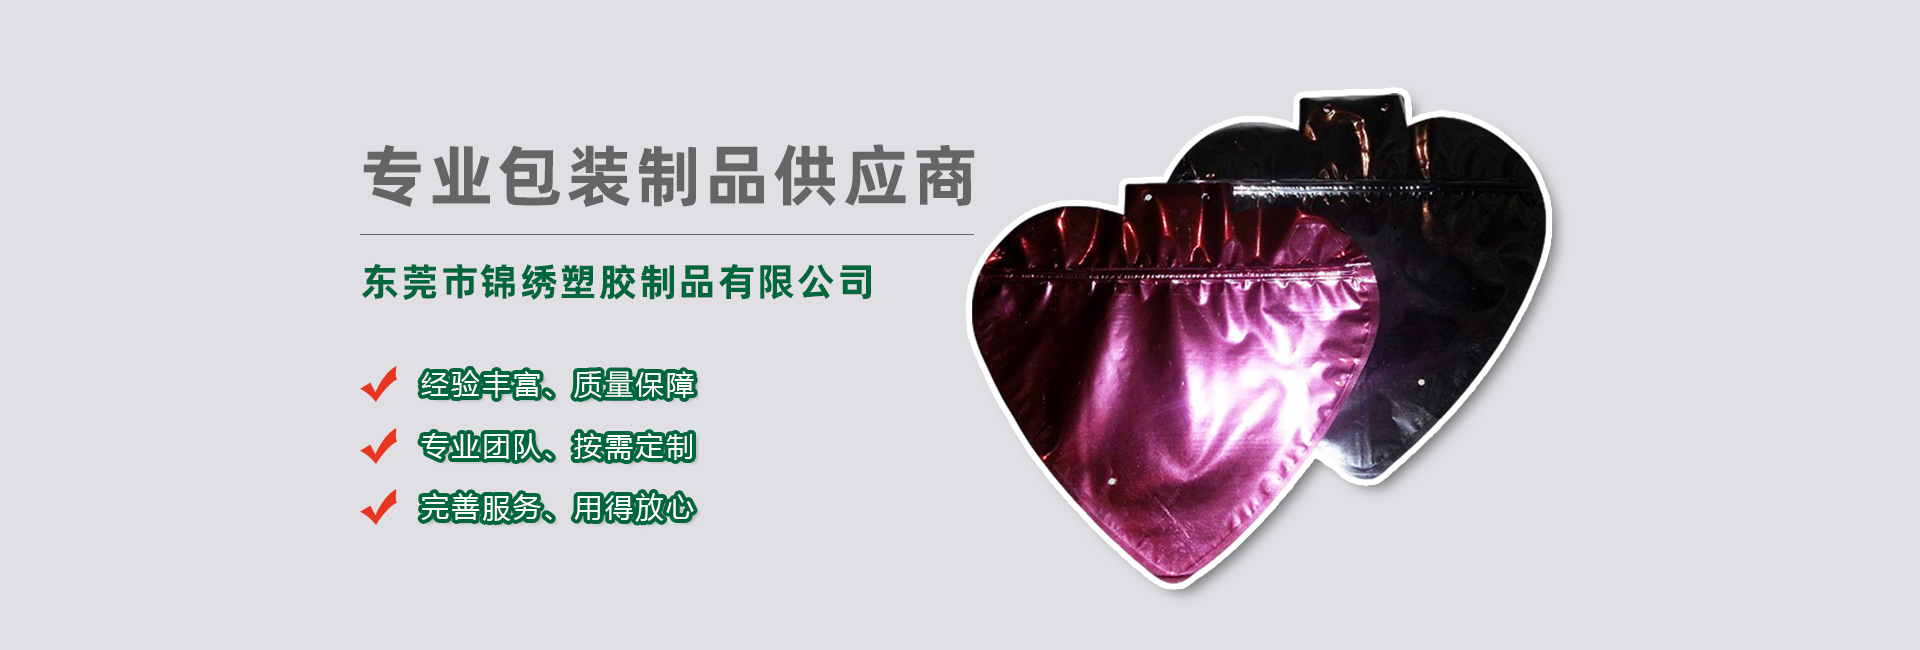 黑龙江食品袋banner